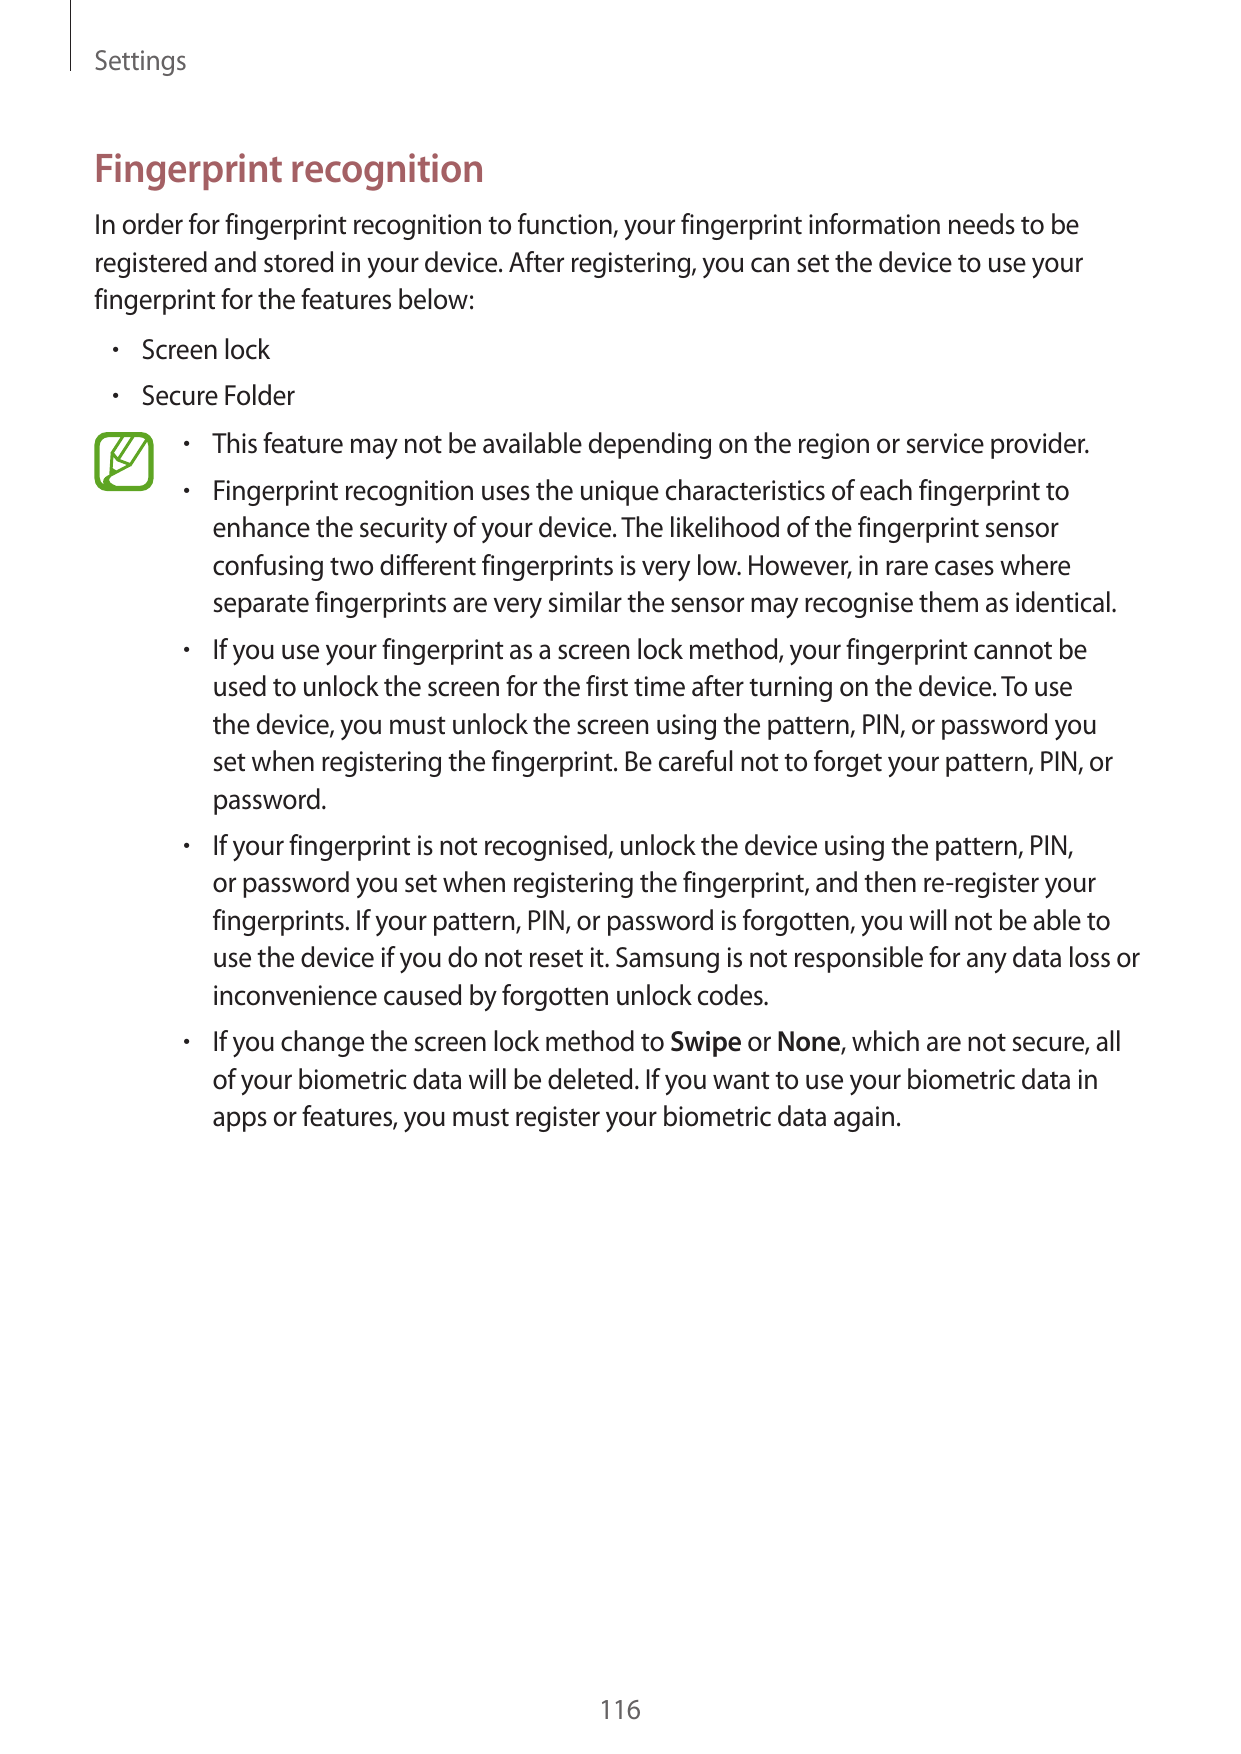 SettingsFingerprint recognitionIn order for fingerprint recognition to function, your fingerprint information needs to beregiste